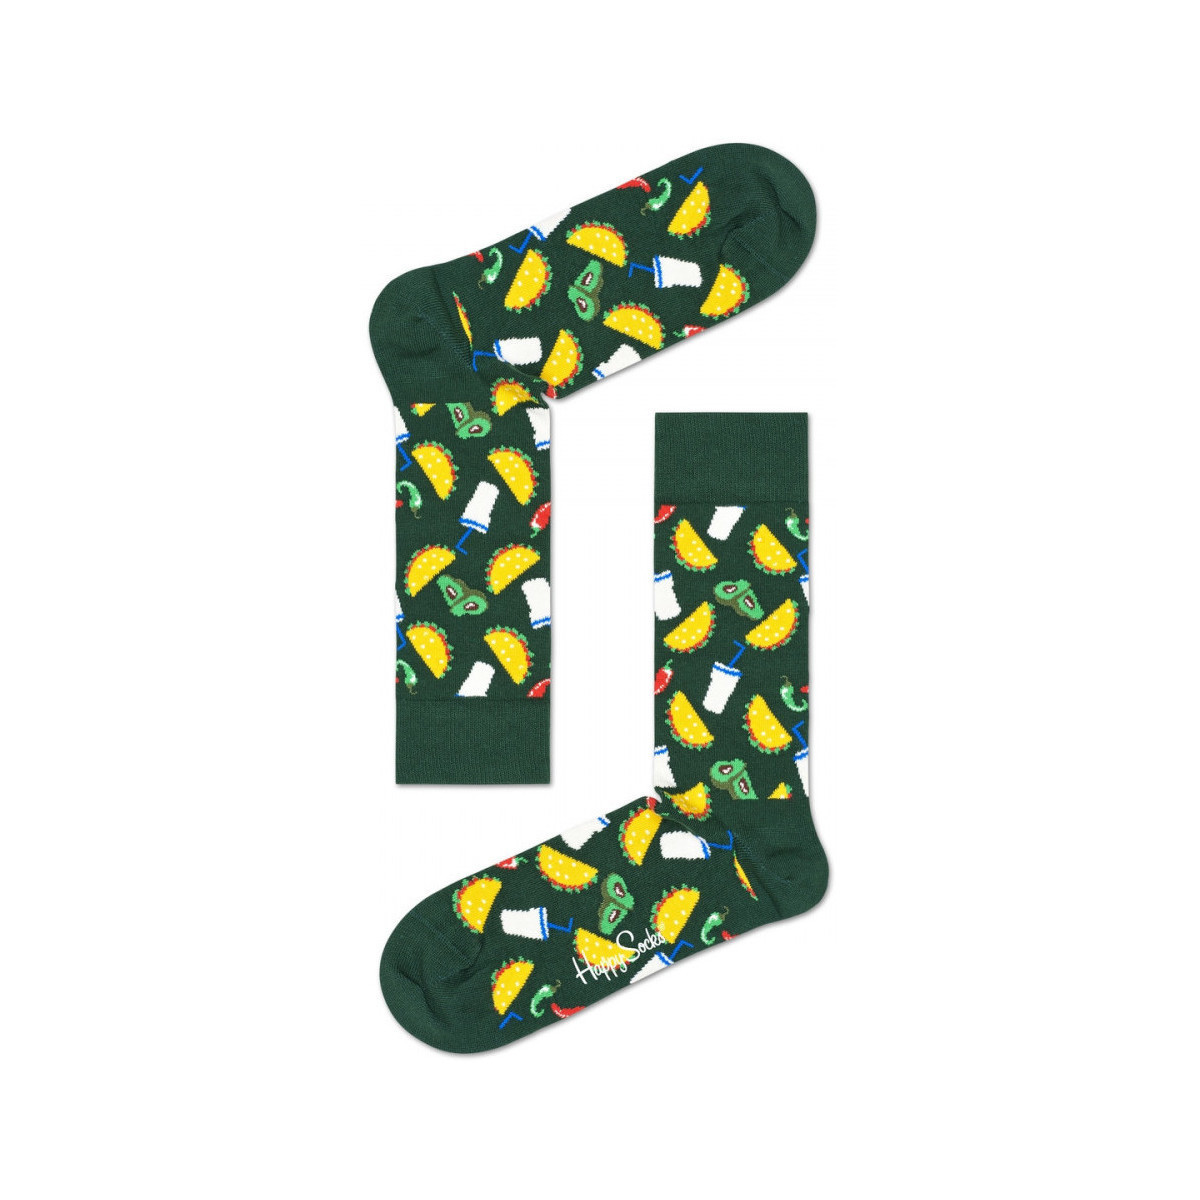 Spodná bielizeň Ponožky Happy socks Taco sock Viacfarebná